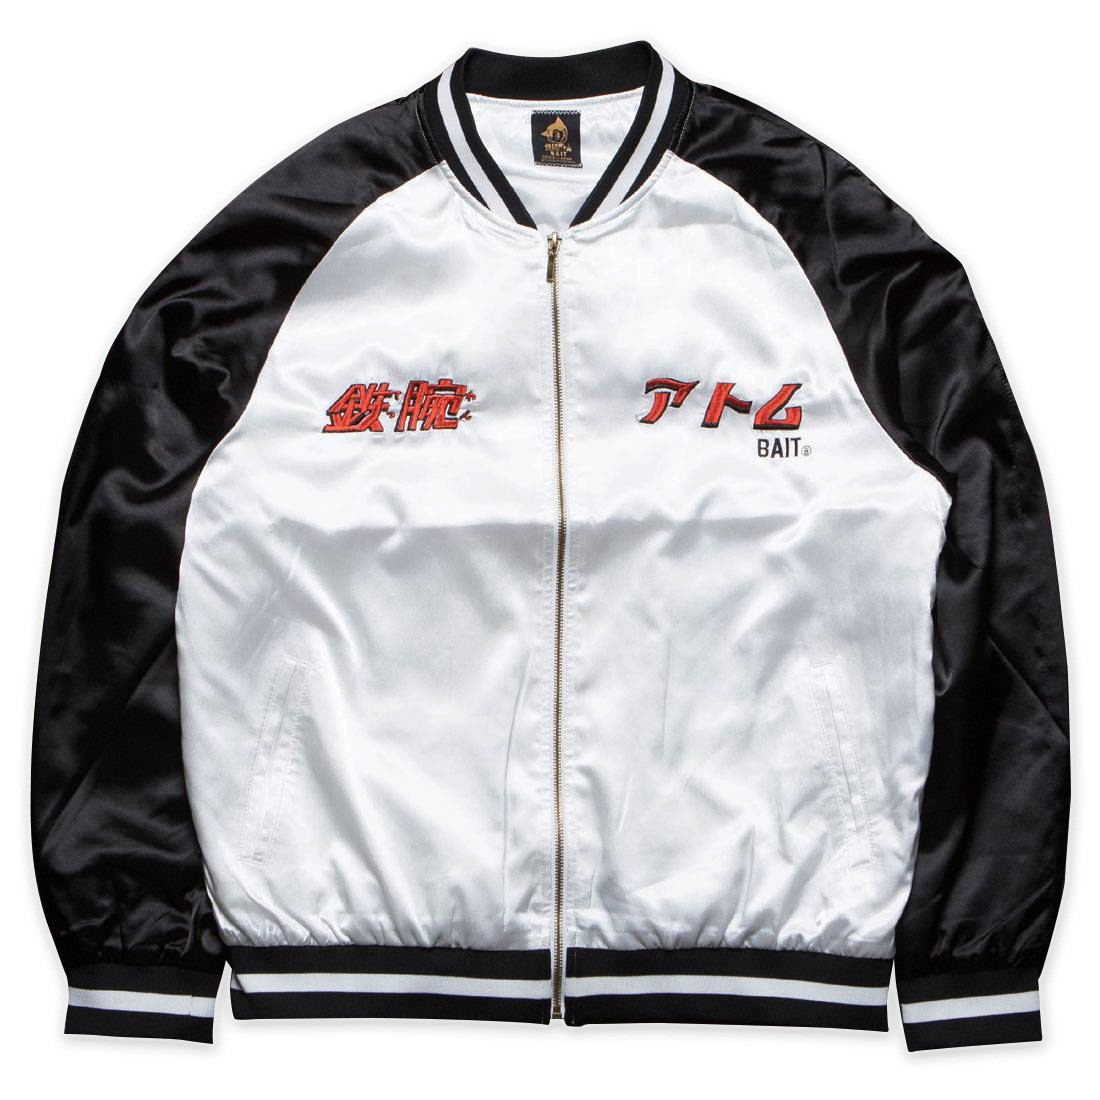 BAIT x Astro Boy Men Mighty Atom Souvenir Jacket black white